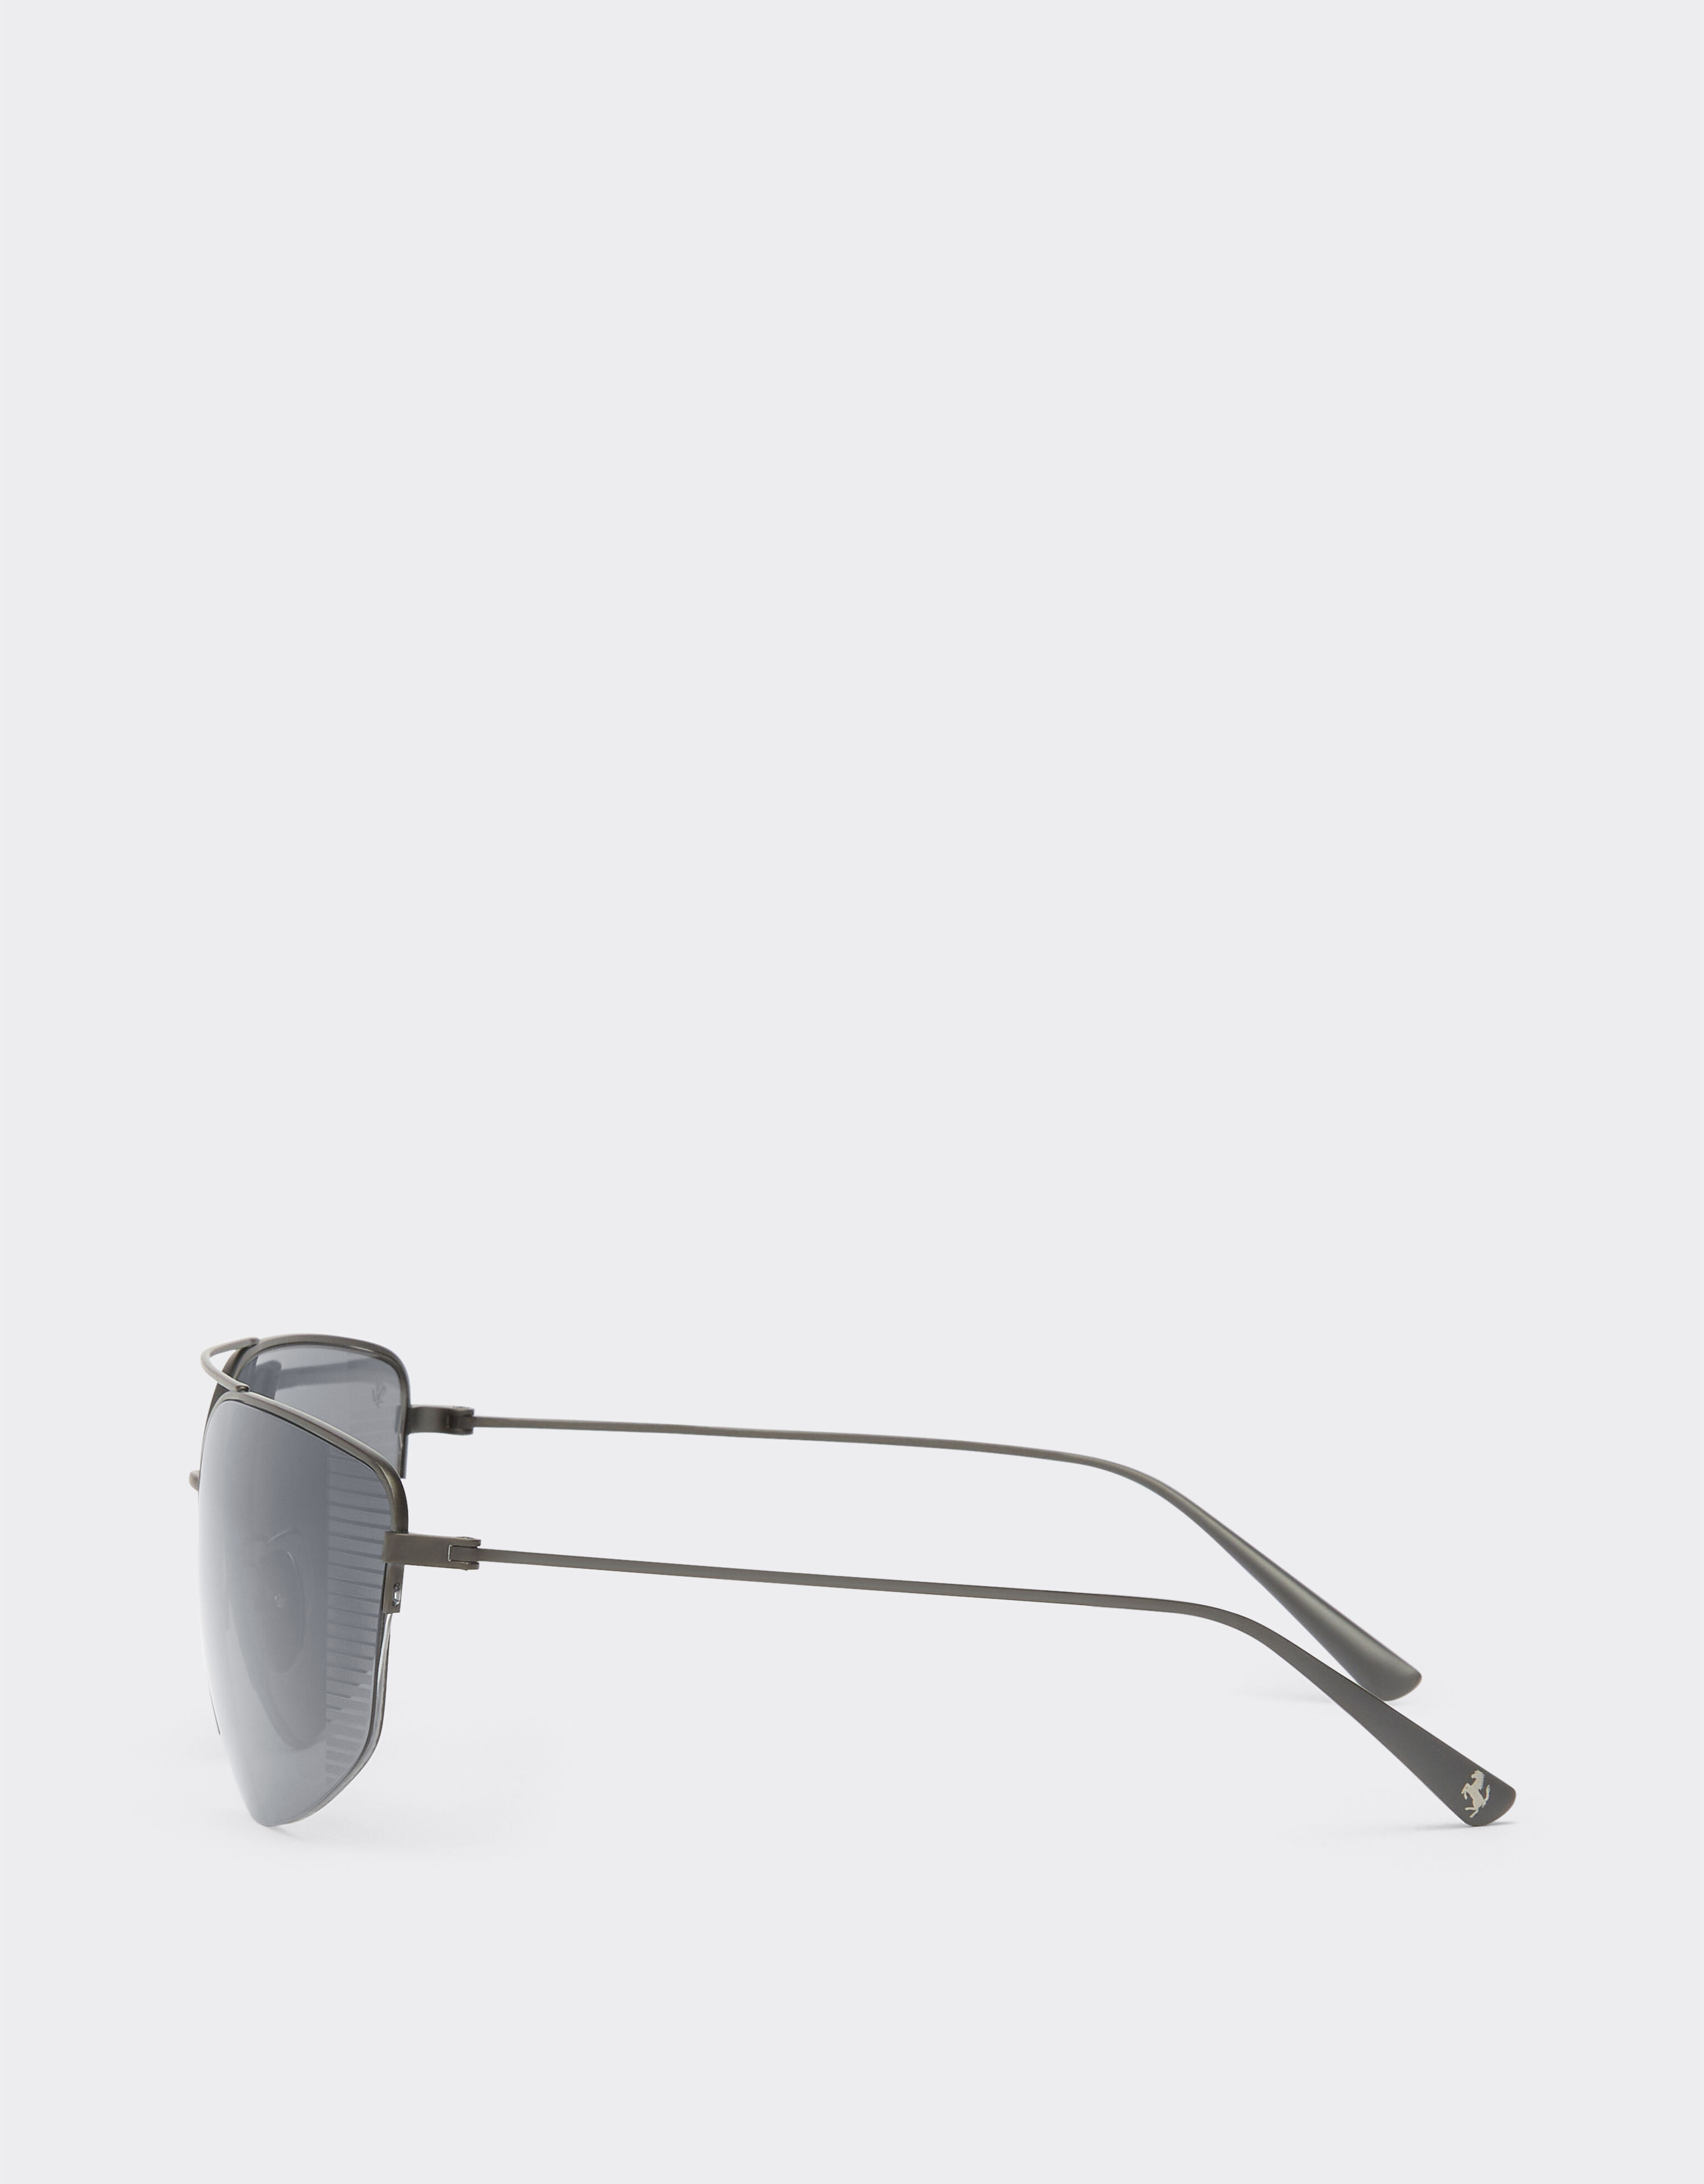 Ferrari Ferrari sunglasses in black titanium with grey polarised lenses Black Matt F1251f